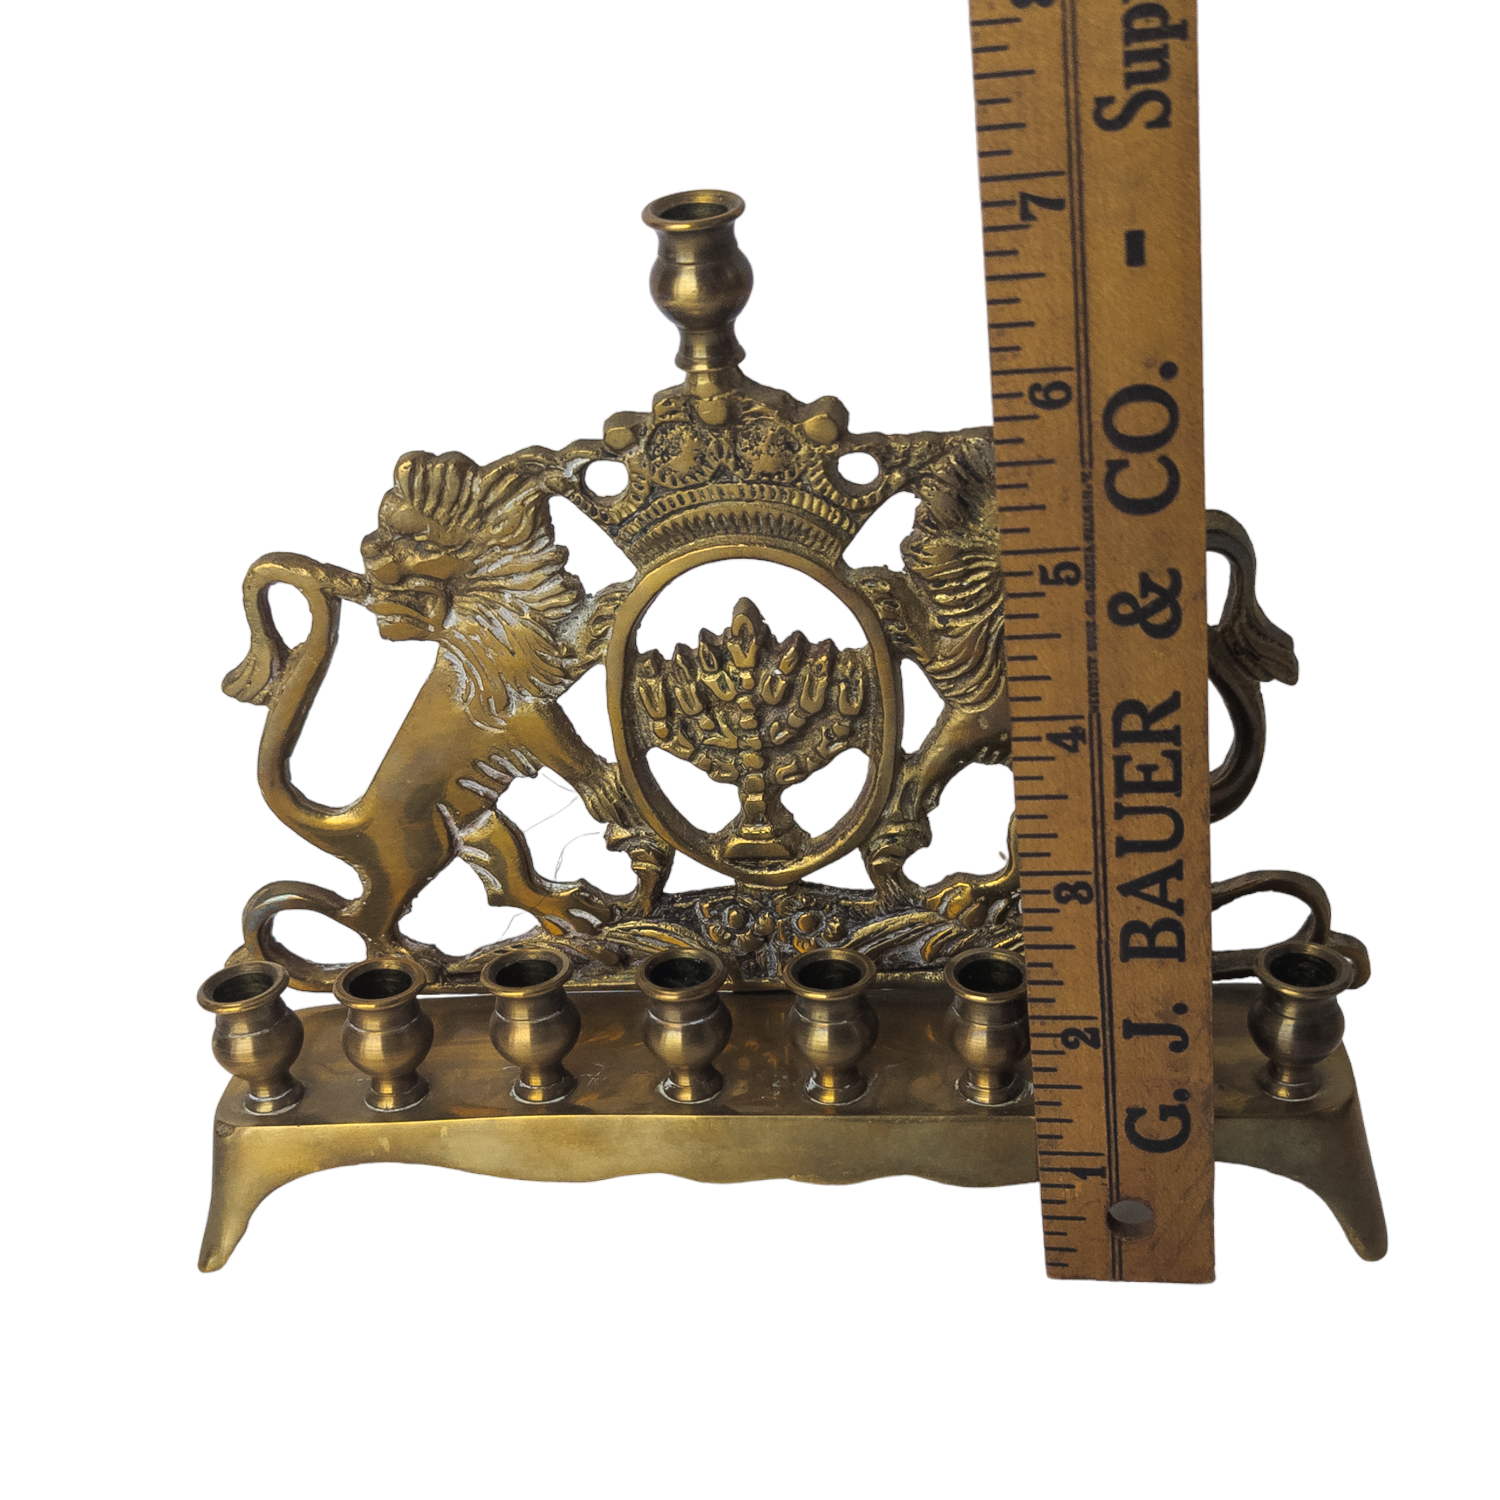 Antique Brass Lions of Judah Menorah